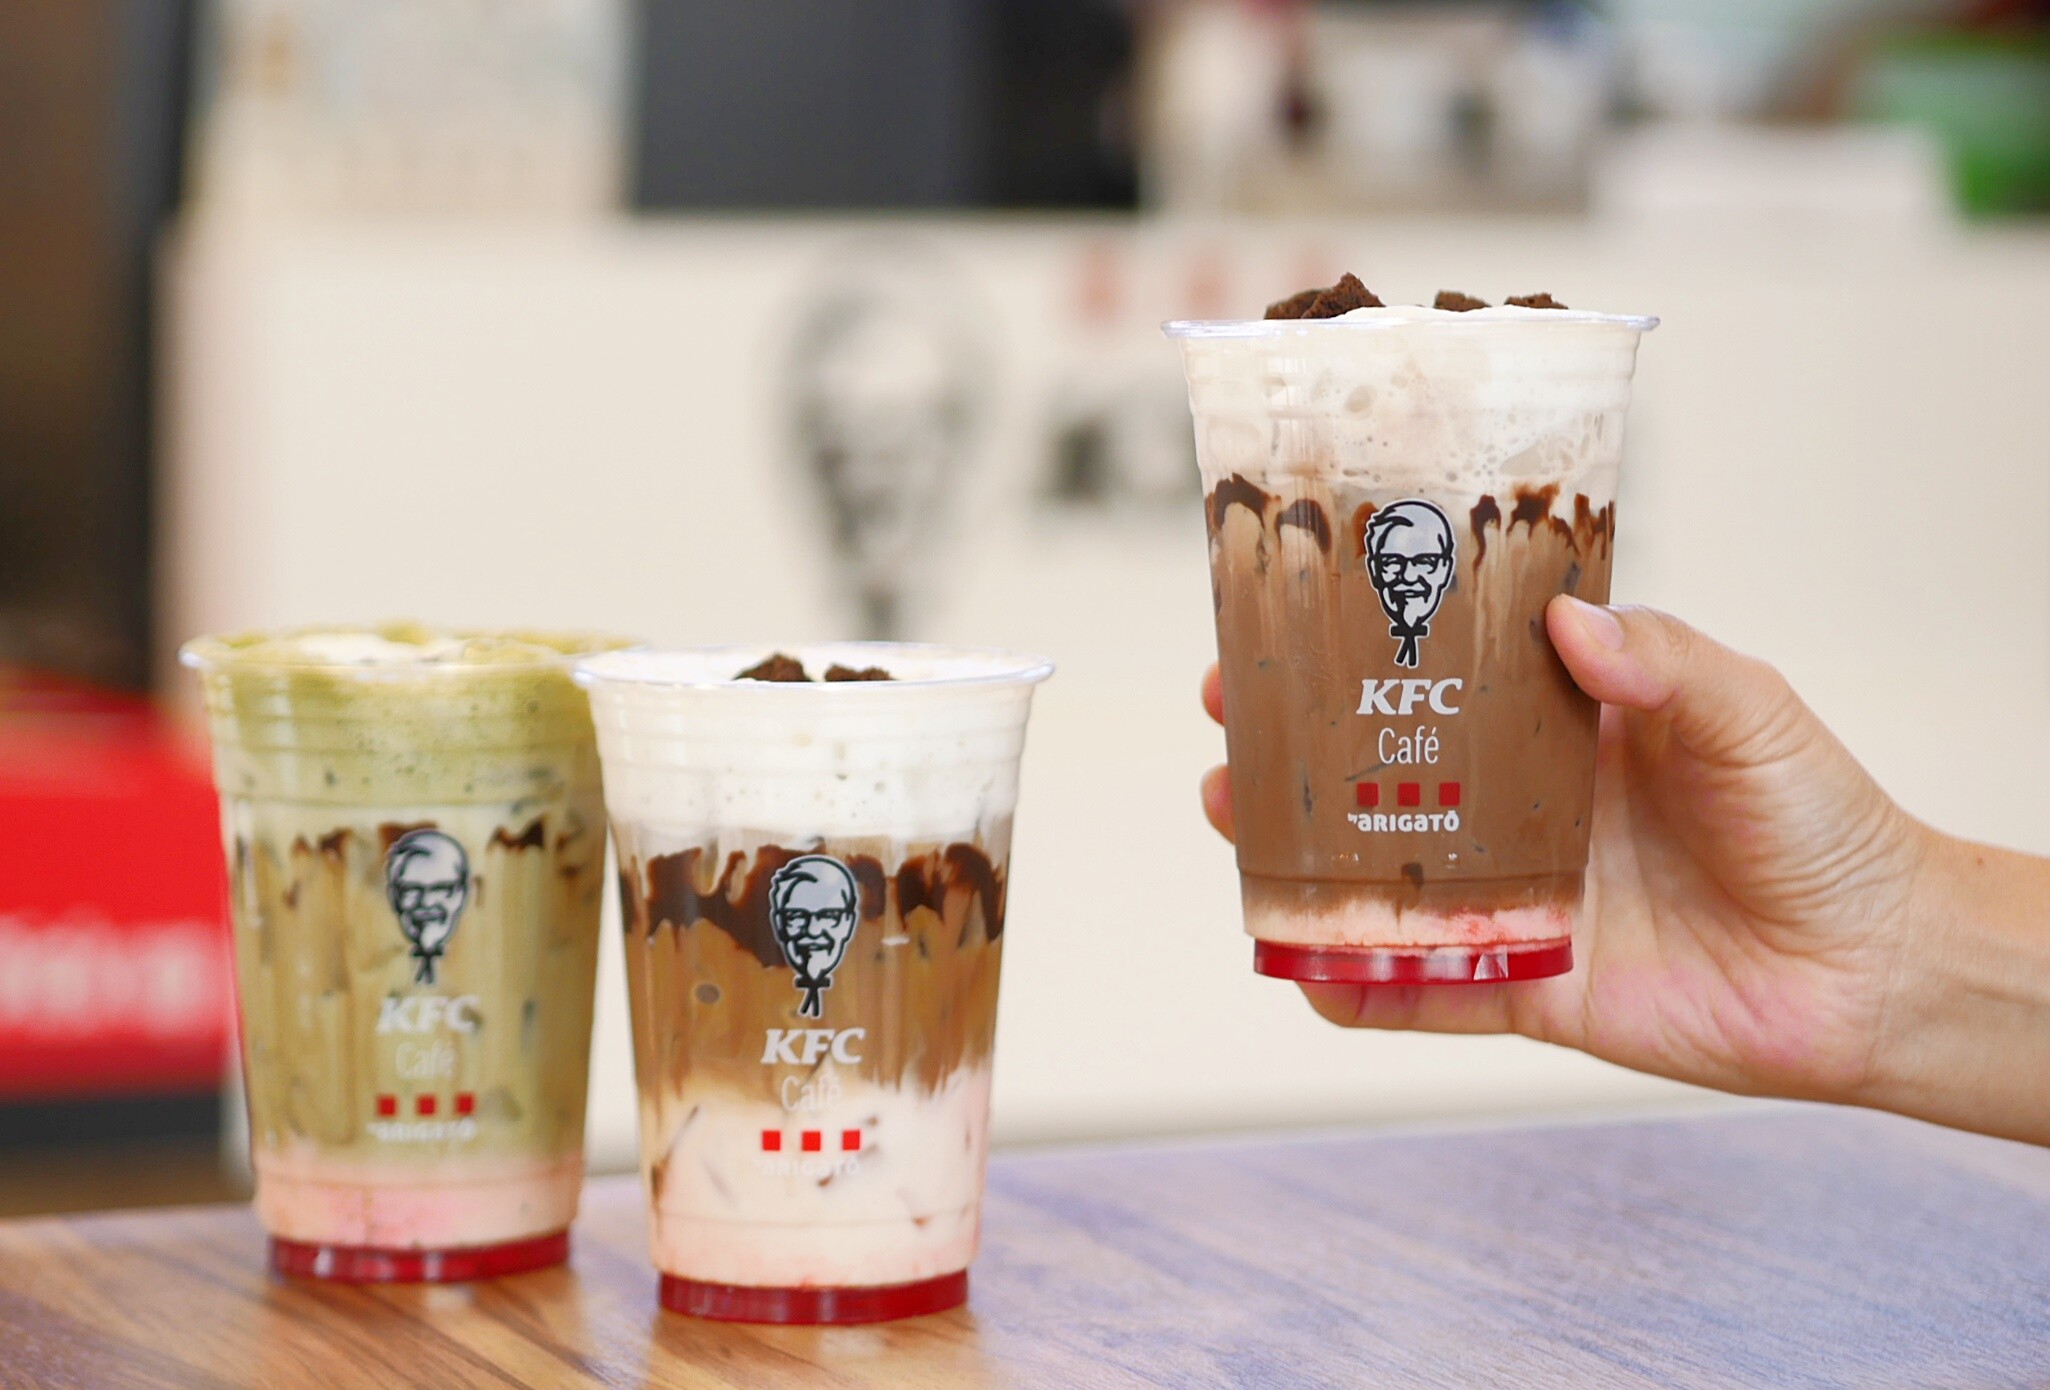 เคเอฟซี เปิดตัวเมนูใหม่ เครื่องดื่ม "KFC Cafe Black Forest Twist"